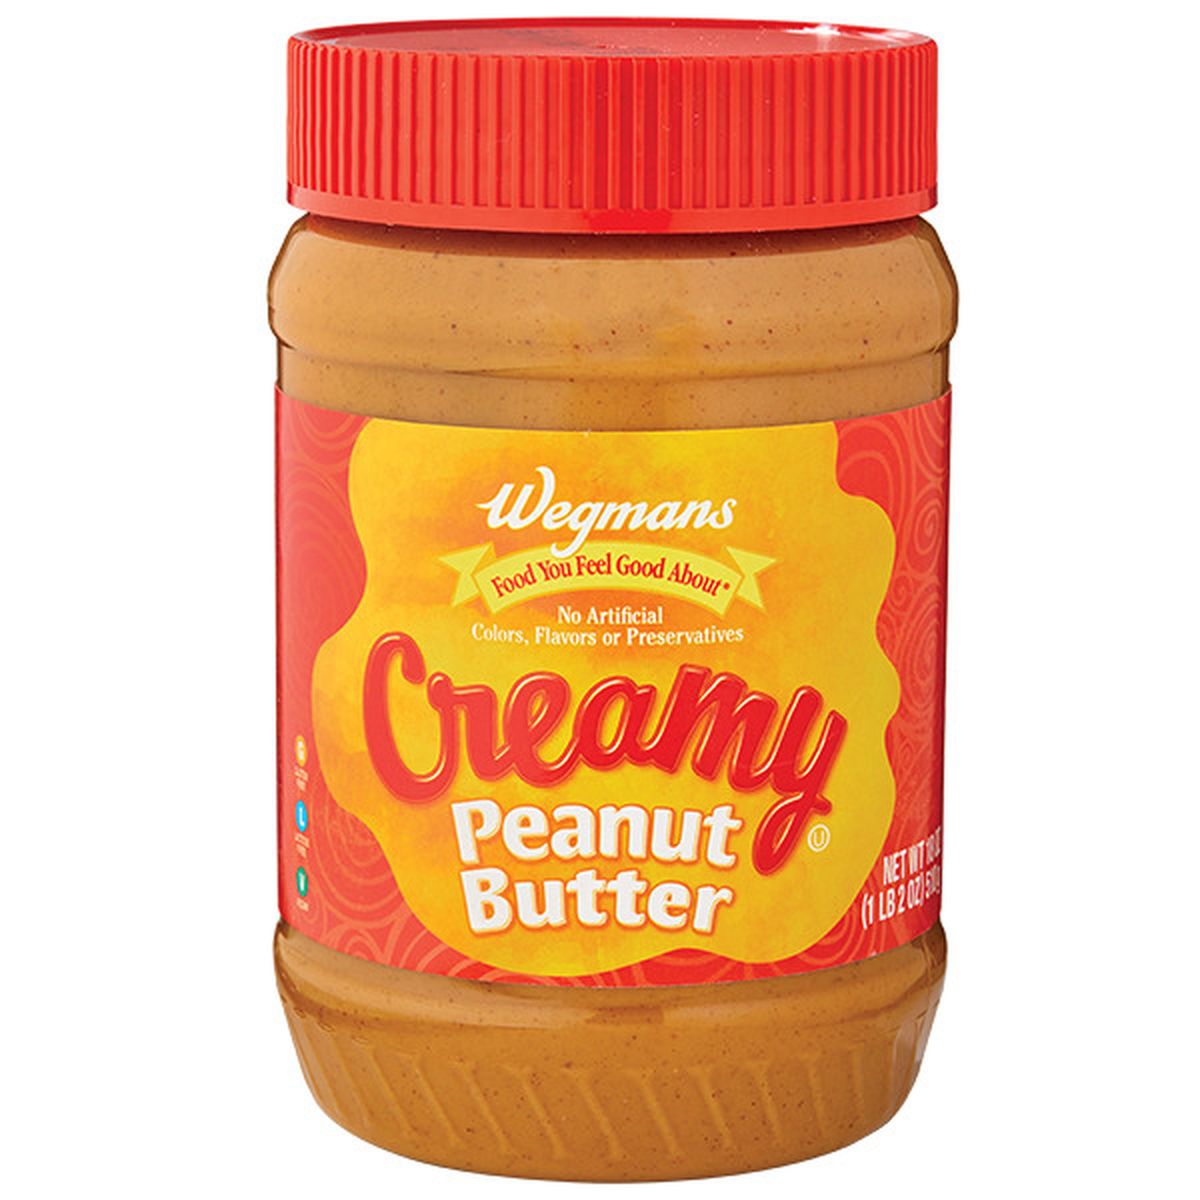 Calories in Wegmans Creamy Peanut Butter